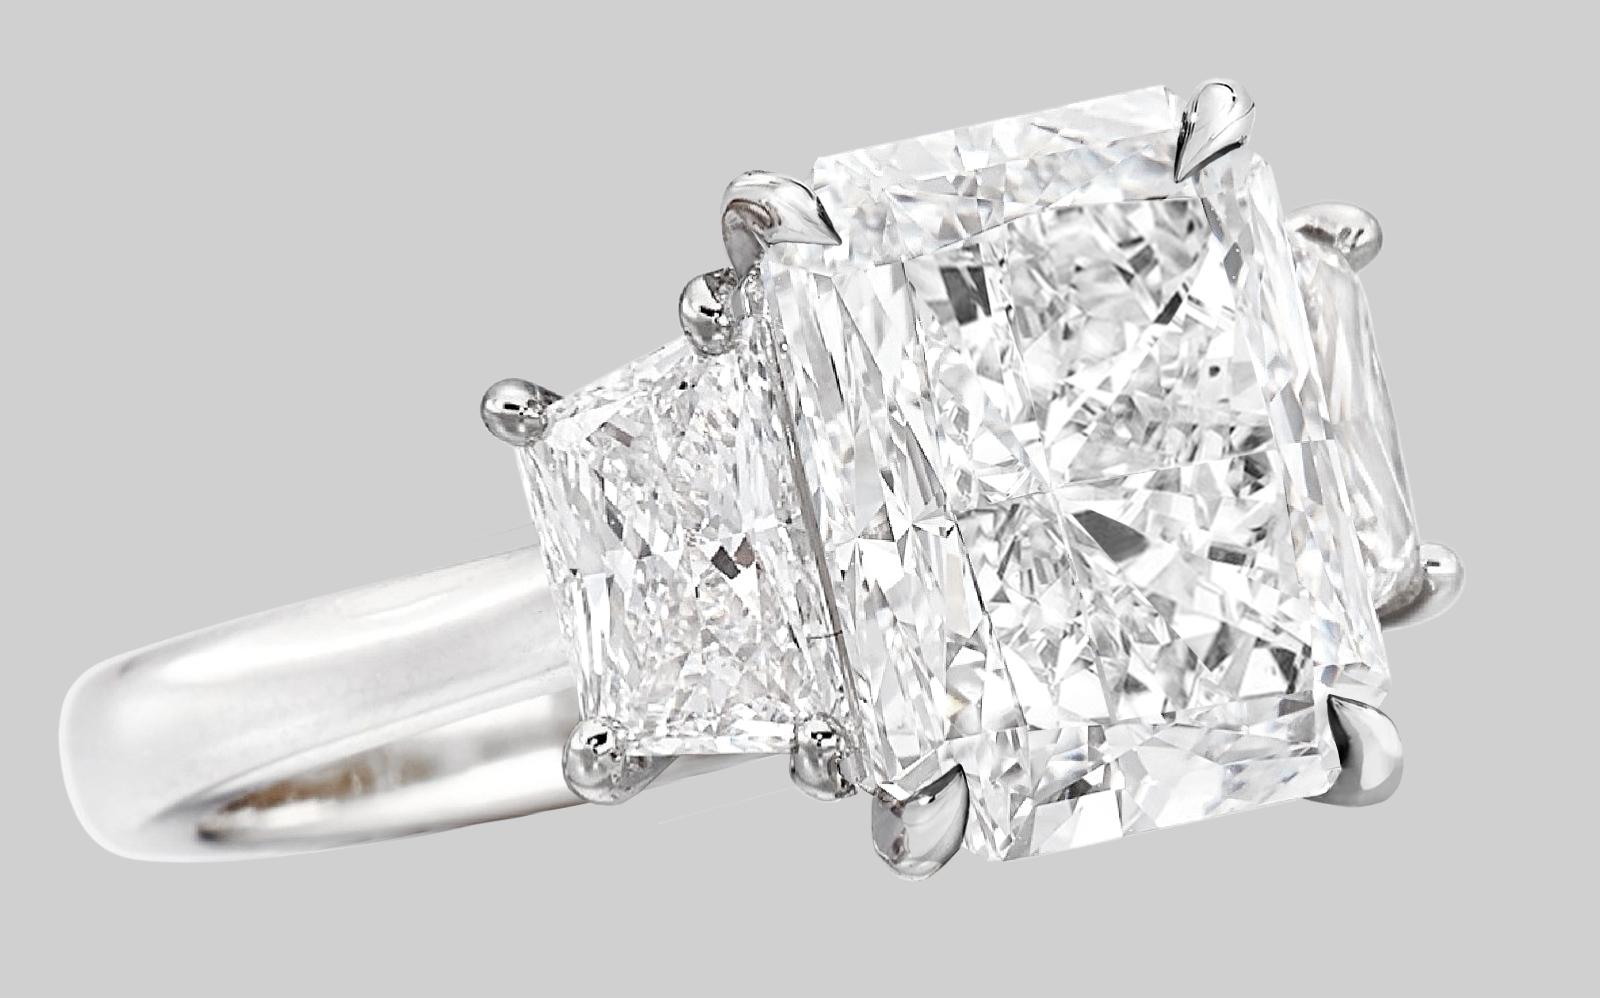 Gönnen Sie sich diesen außergewöhnlichen Ring, ein wahres Meisterwerk des Schmucks. Sein prächtiger Mittelstein, ein GIA-zertifizierter 4-Karat-Diamant, strahlt mit einer unvergleichlichen Klarheit und Reinheit und rühmt sich eines E-Farbgrades, der